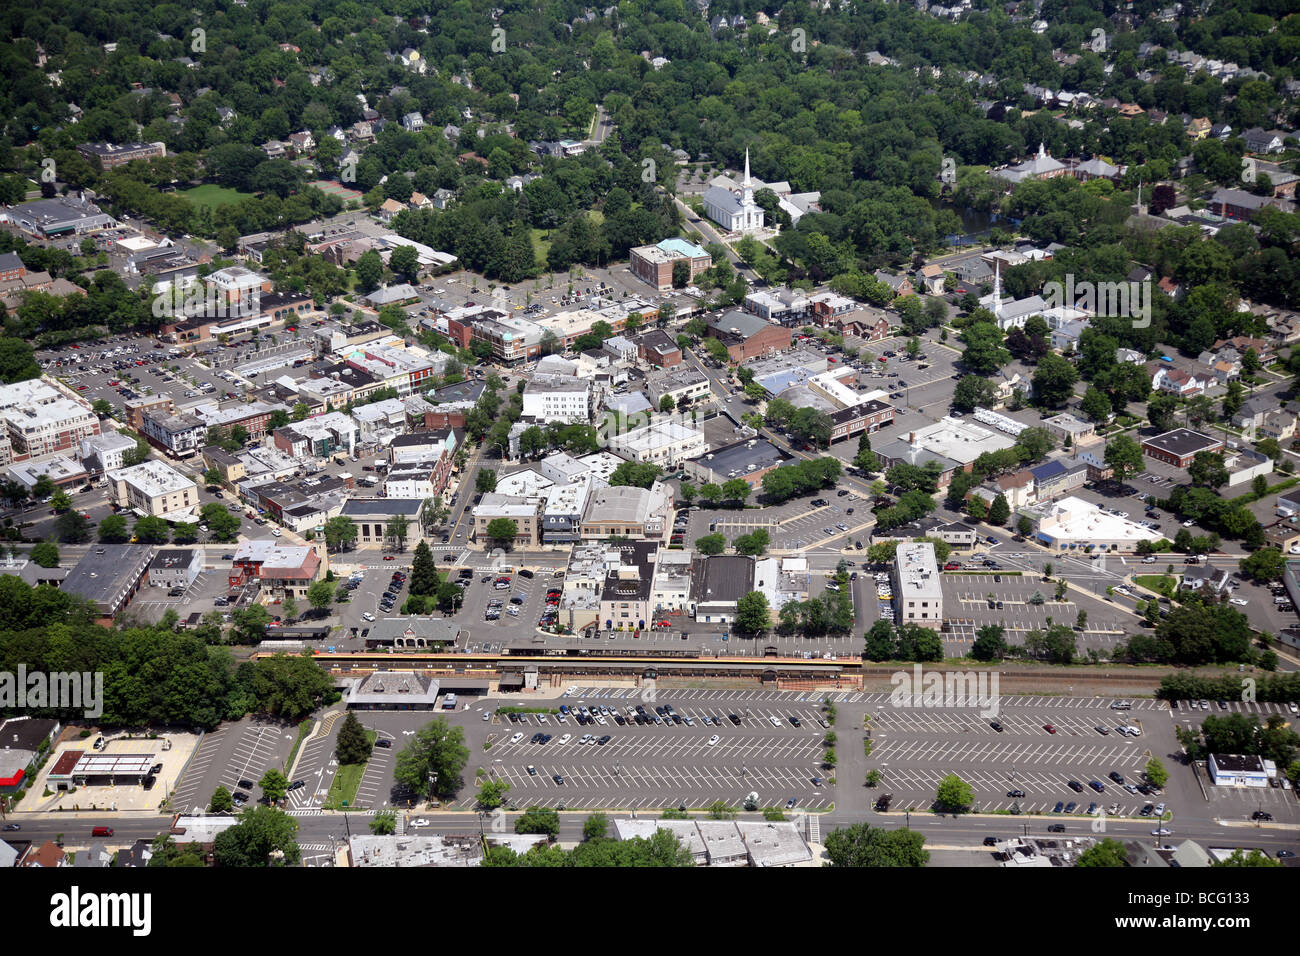 Luftbild des Westfield, New Jersey Union County USA Vereinigte Staaten Amerika Stockfoto